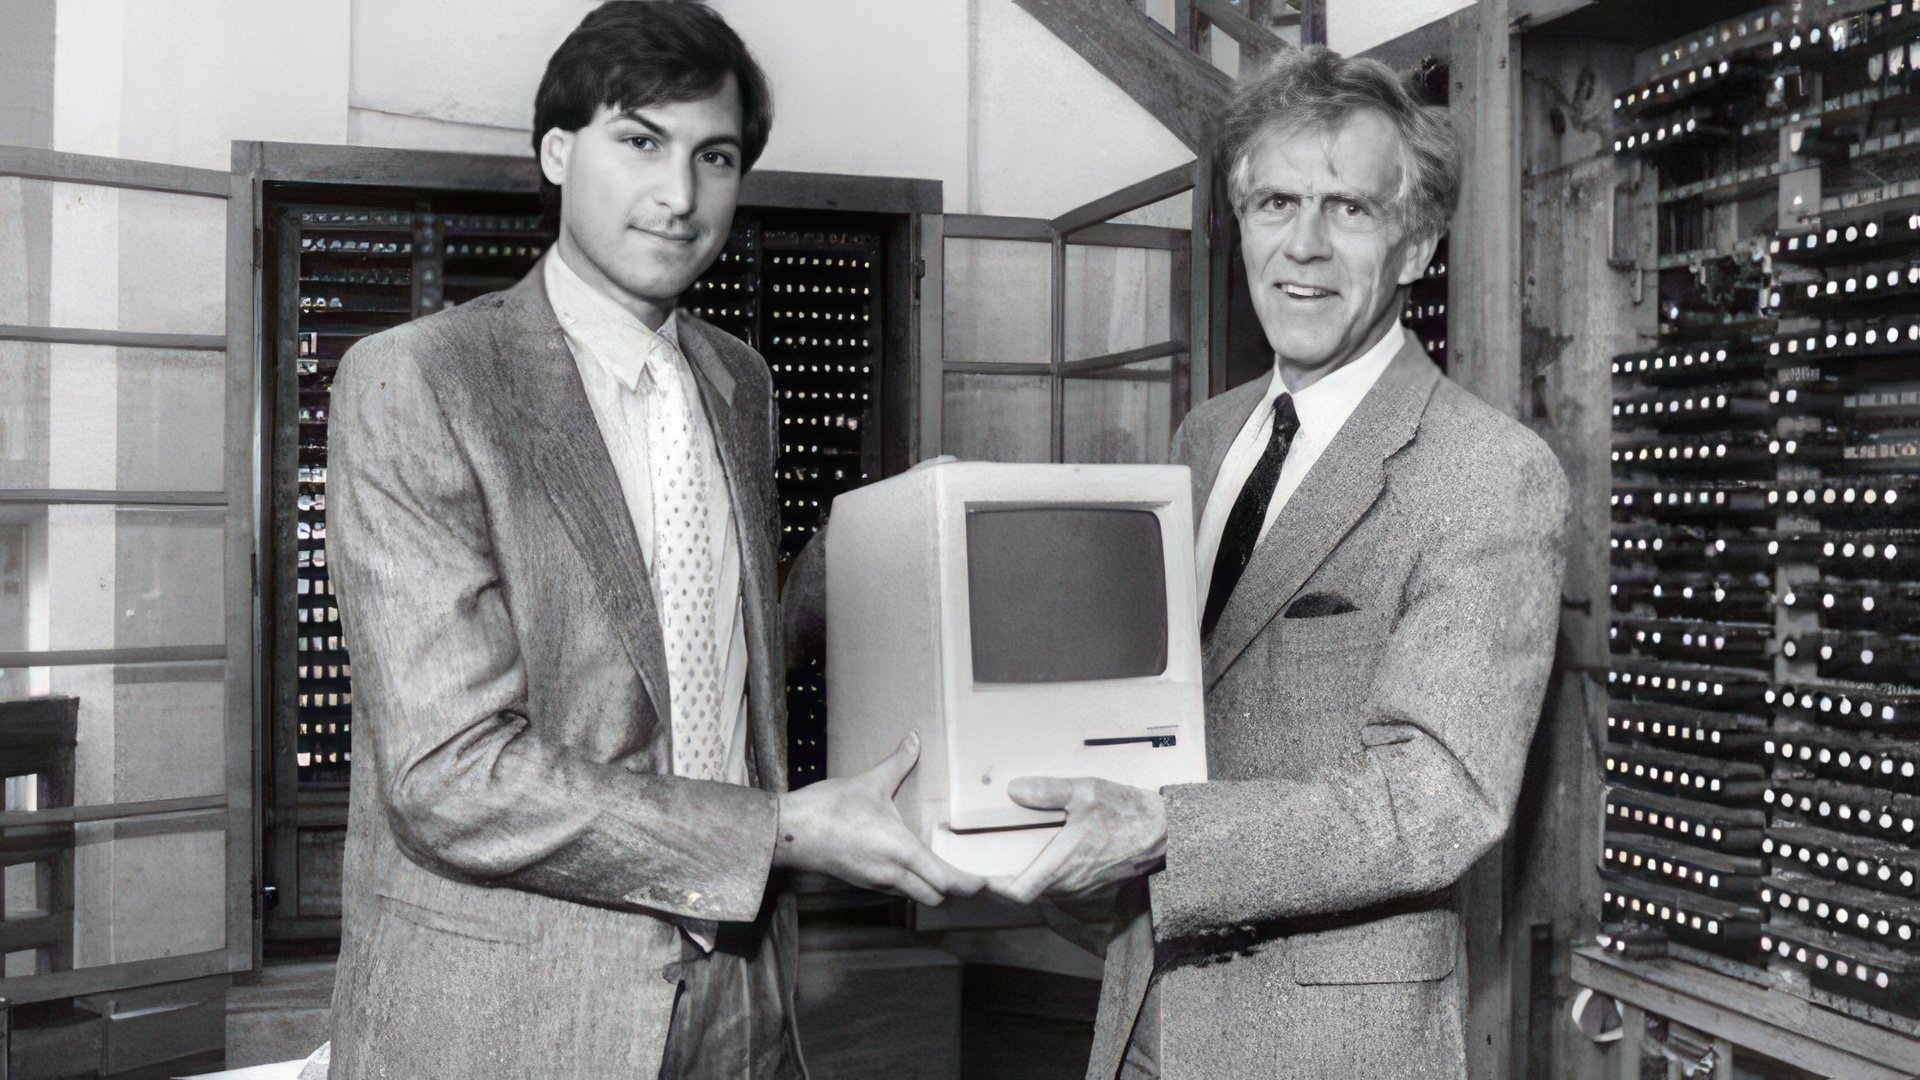 Steve Jobs' first computer cost $666.66